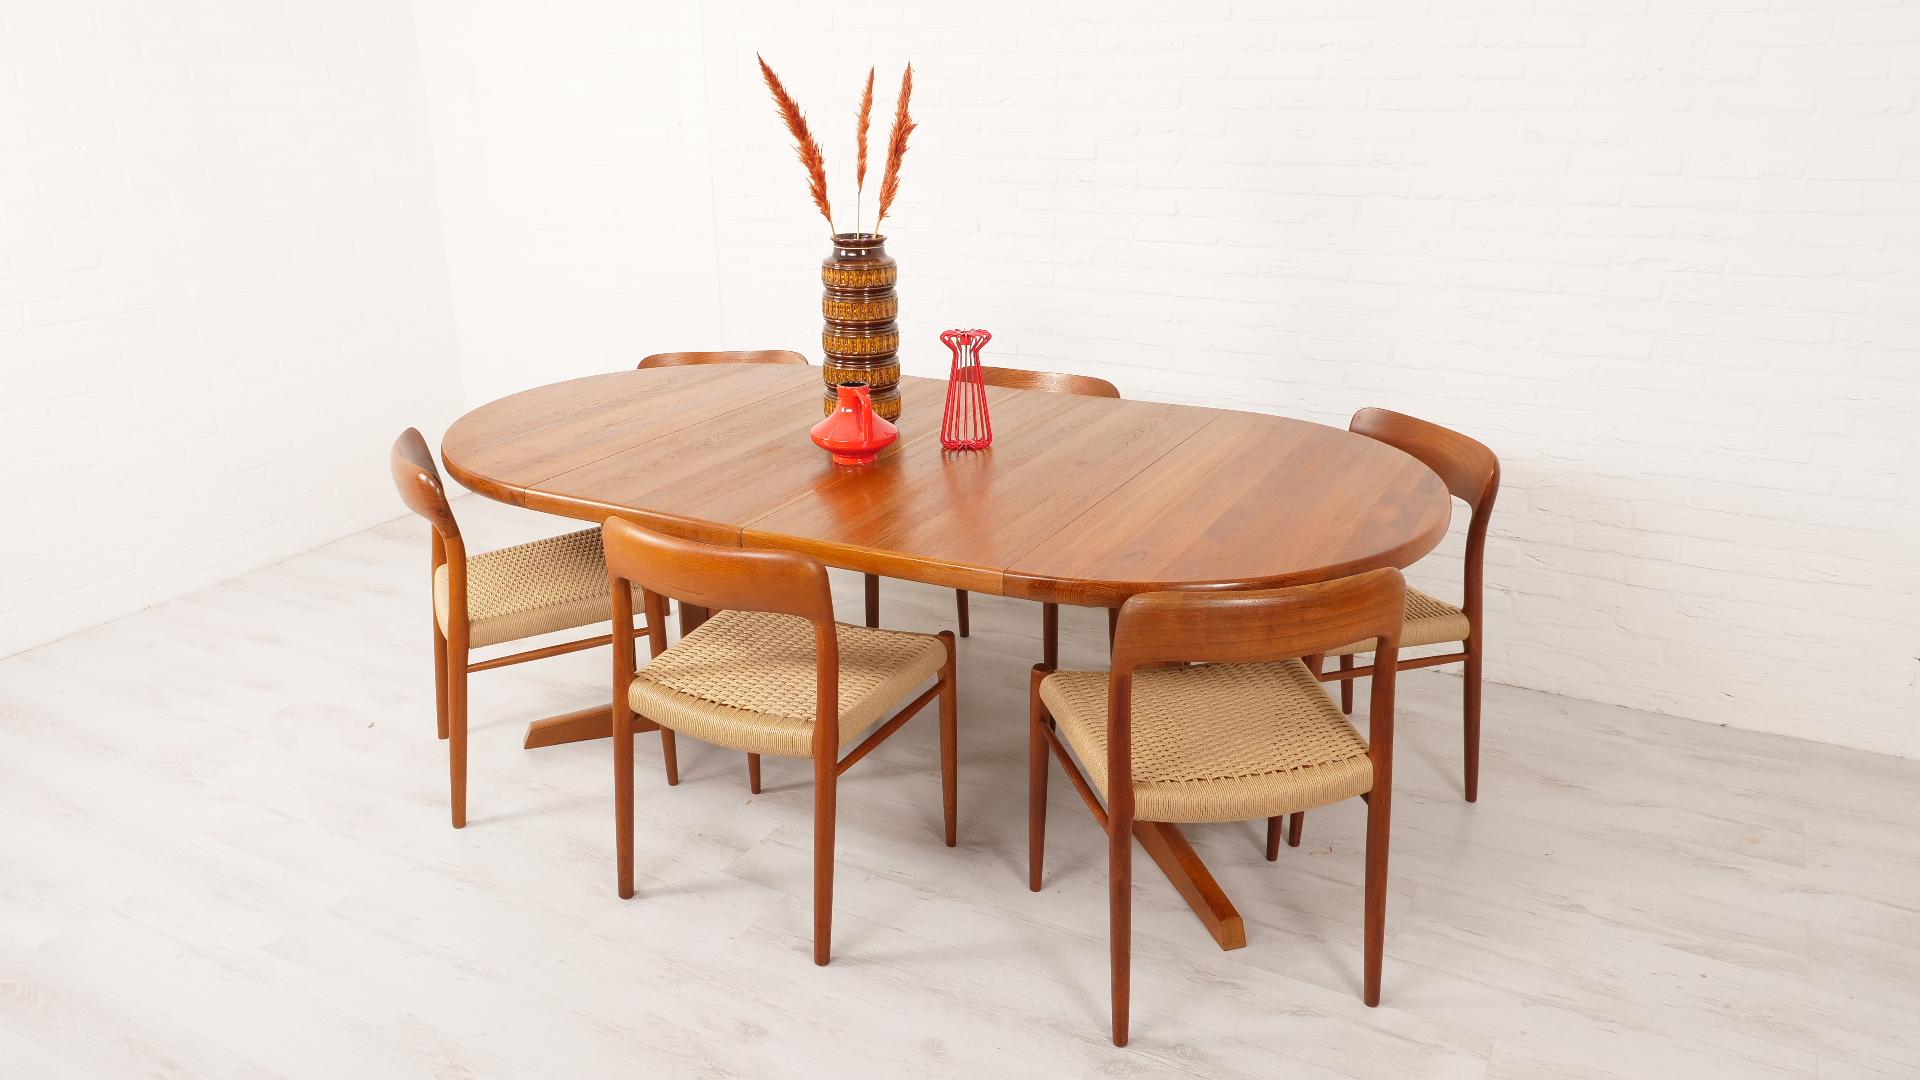 Dieser schöne, große runde Vintage-Esstisch wurde von Niels Otto Møller in Dänemark entworfen. Der Tisch ist aus massivem Teakholz gefertigt. Ein echtes Beispiel für dänische Spitzenqualität! Der runde Esstisch aus Holz kann mit 2 Zwischenblättern